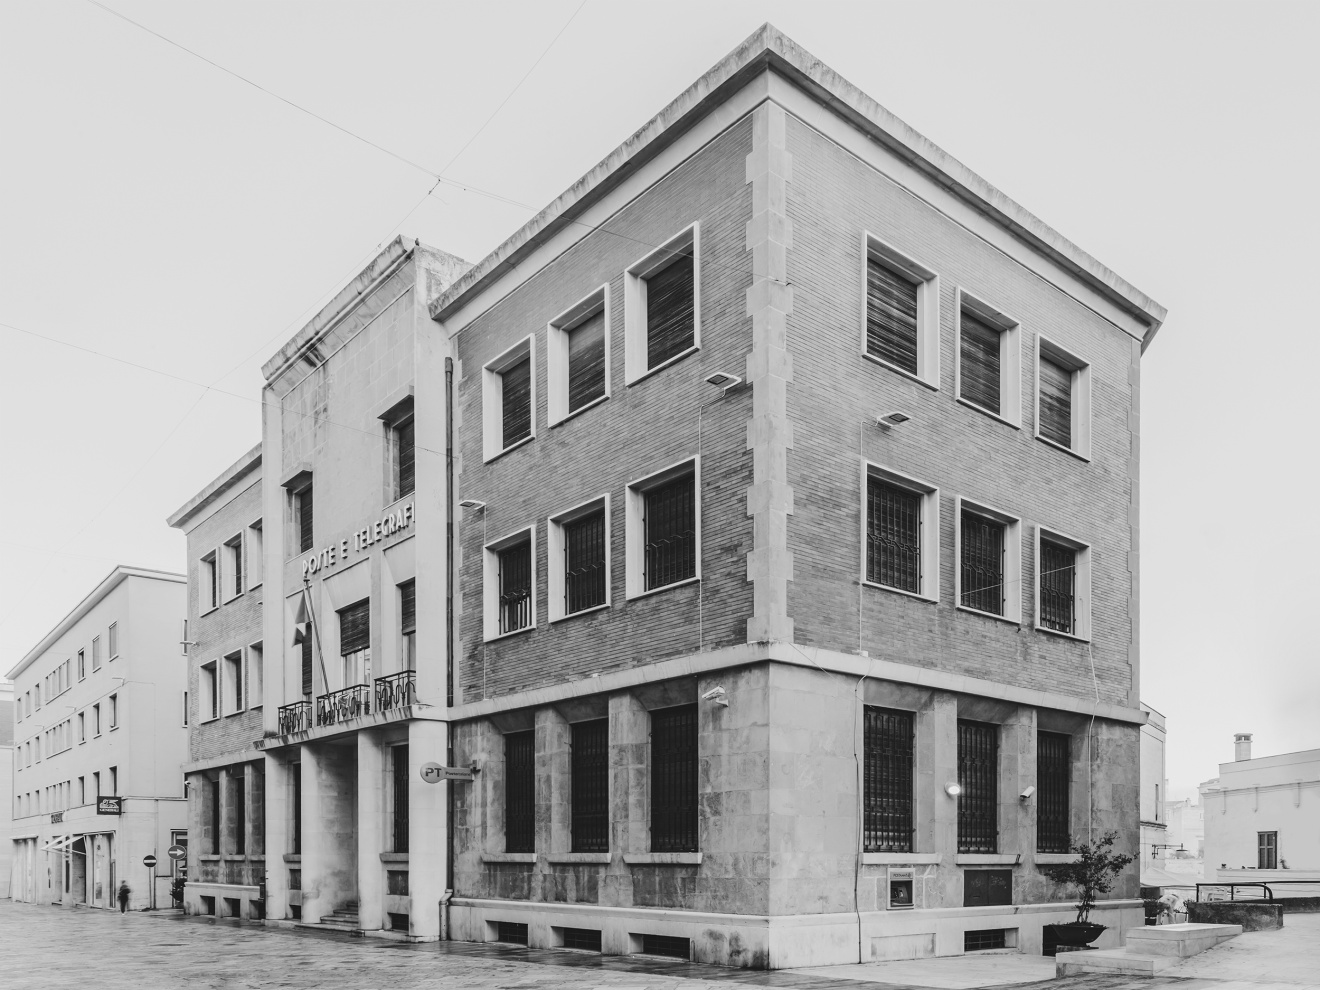 Palazzo delle Poste e Telegrafi - Matera
1932, V.Corazza